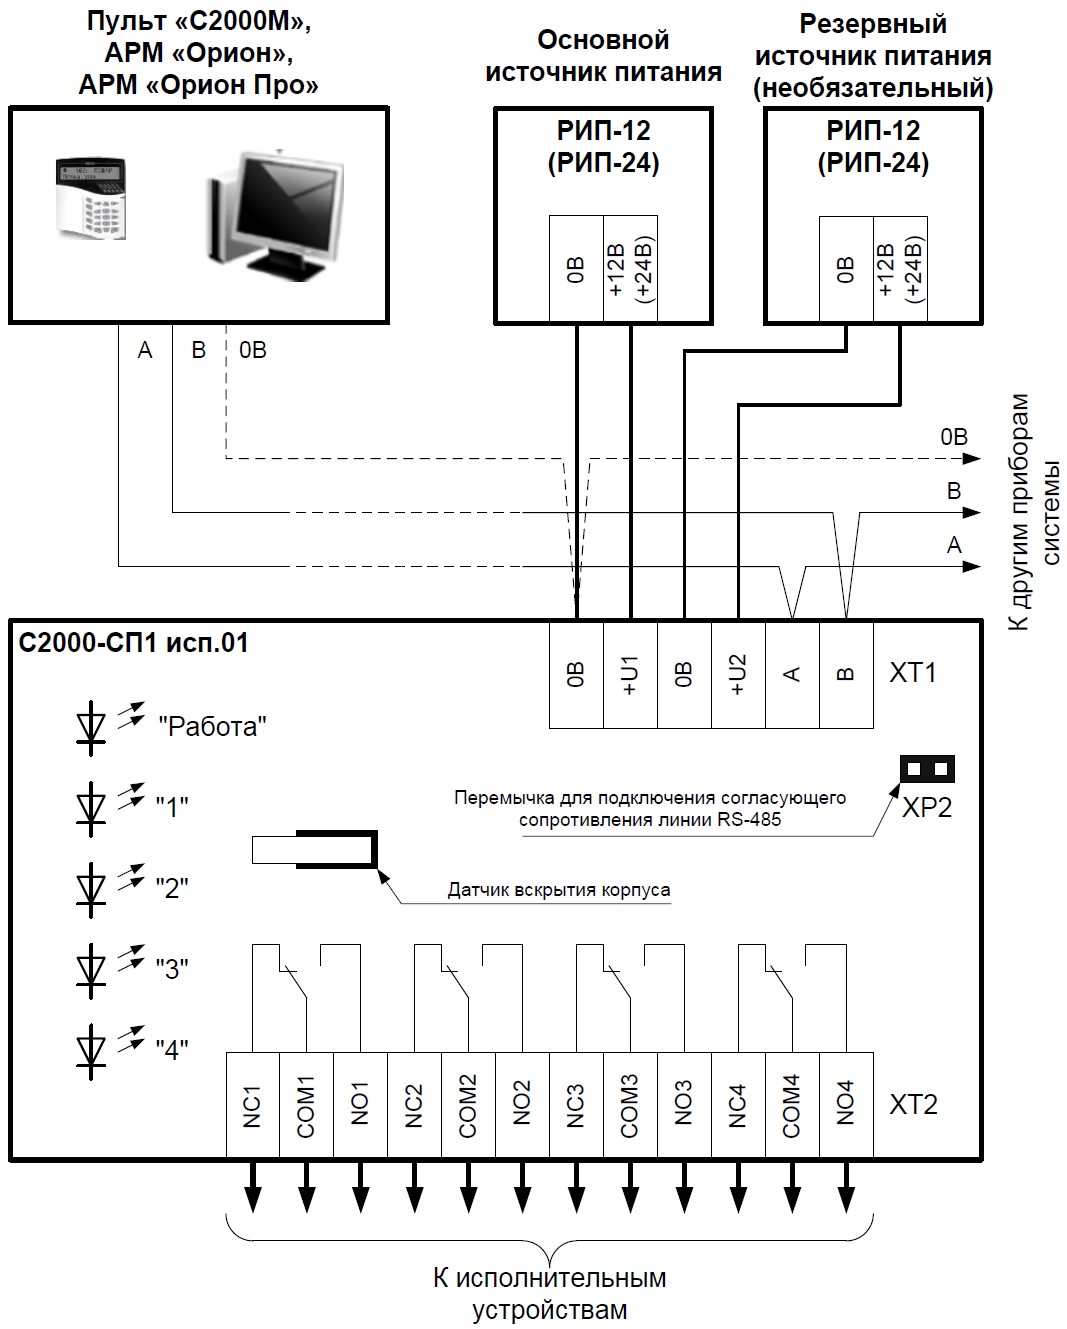 Схема внешних соединений блока С2000-СП1 исп.01